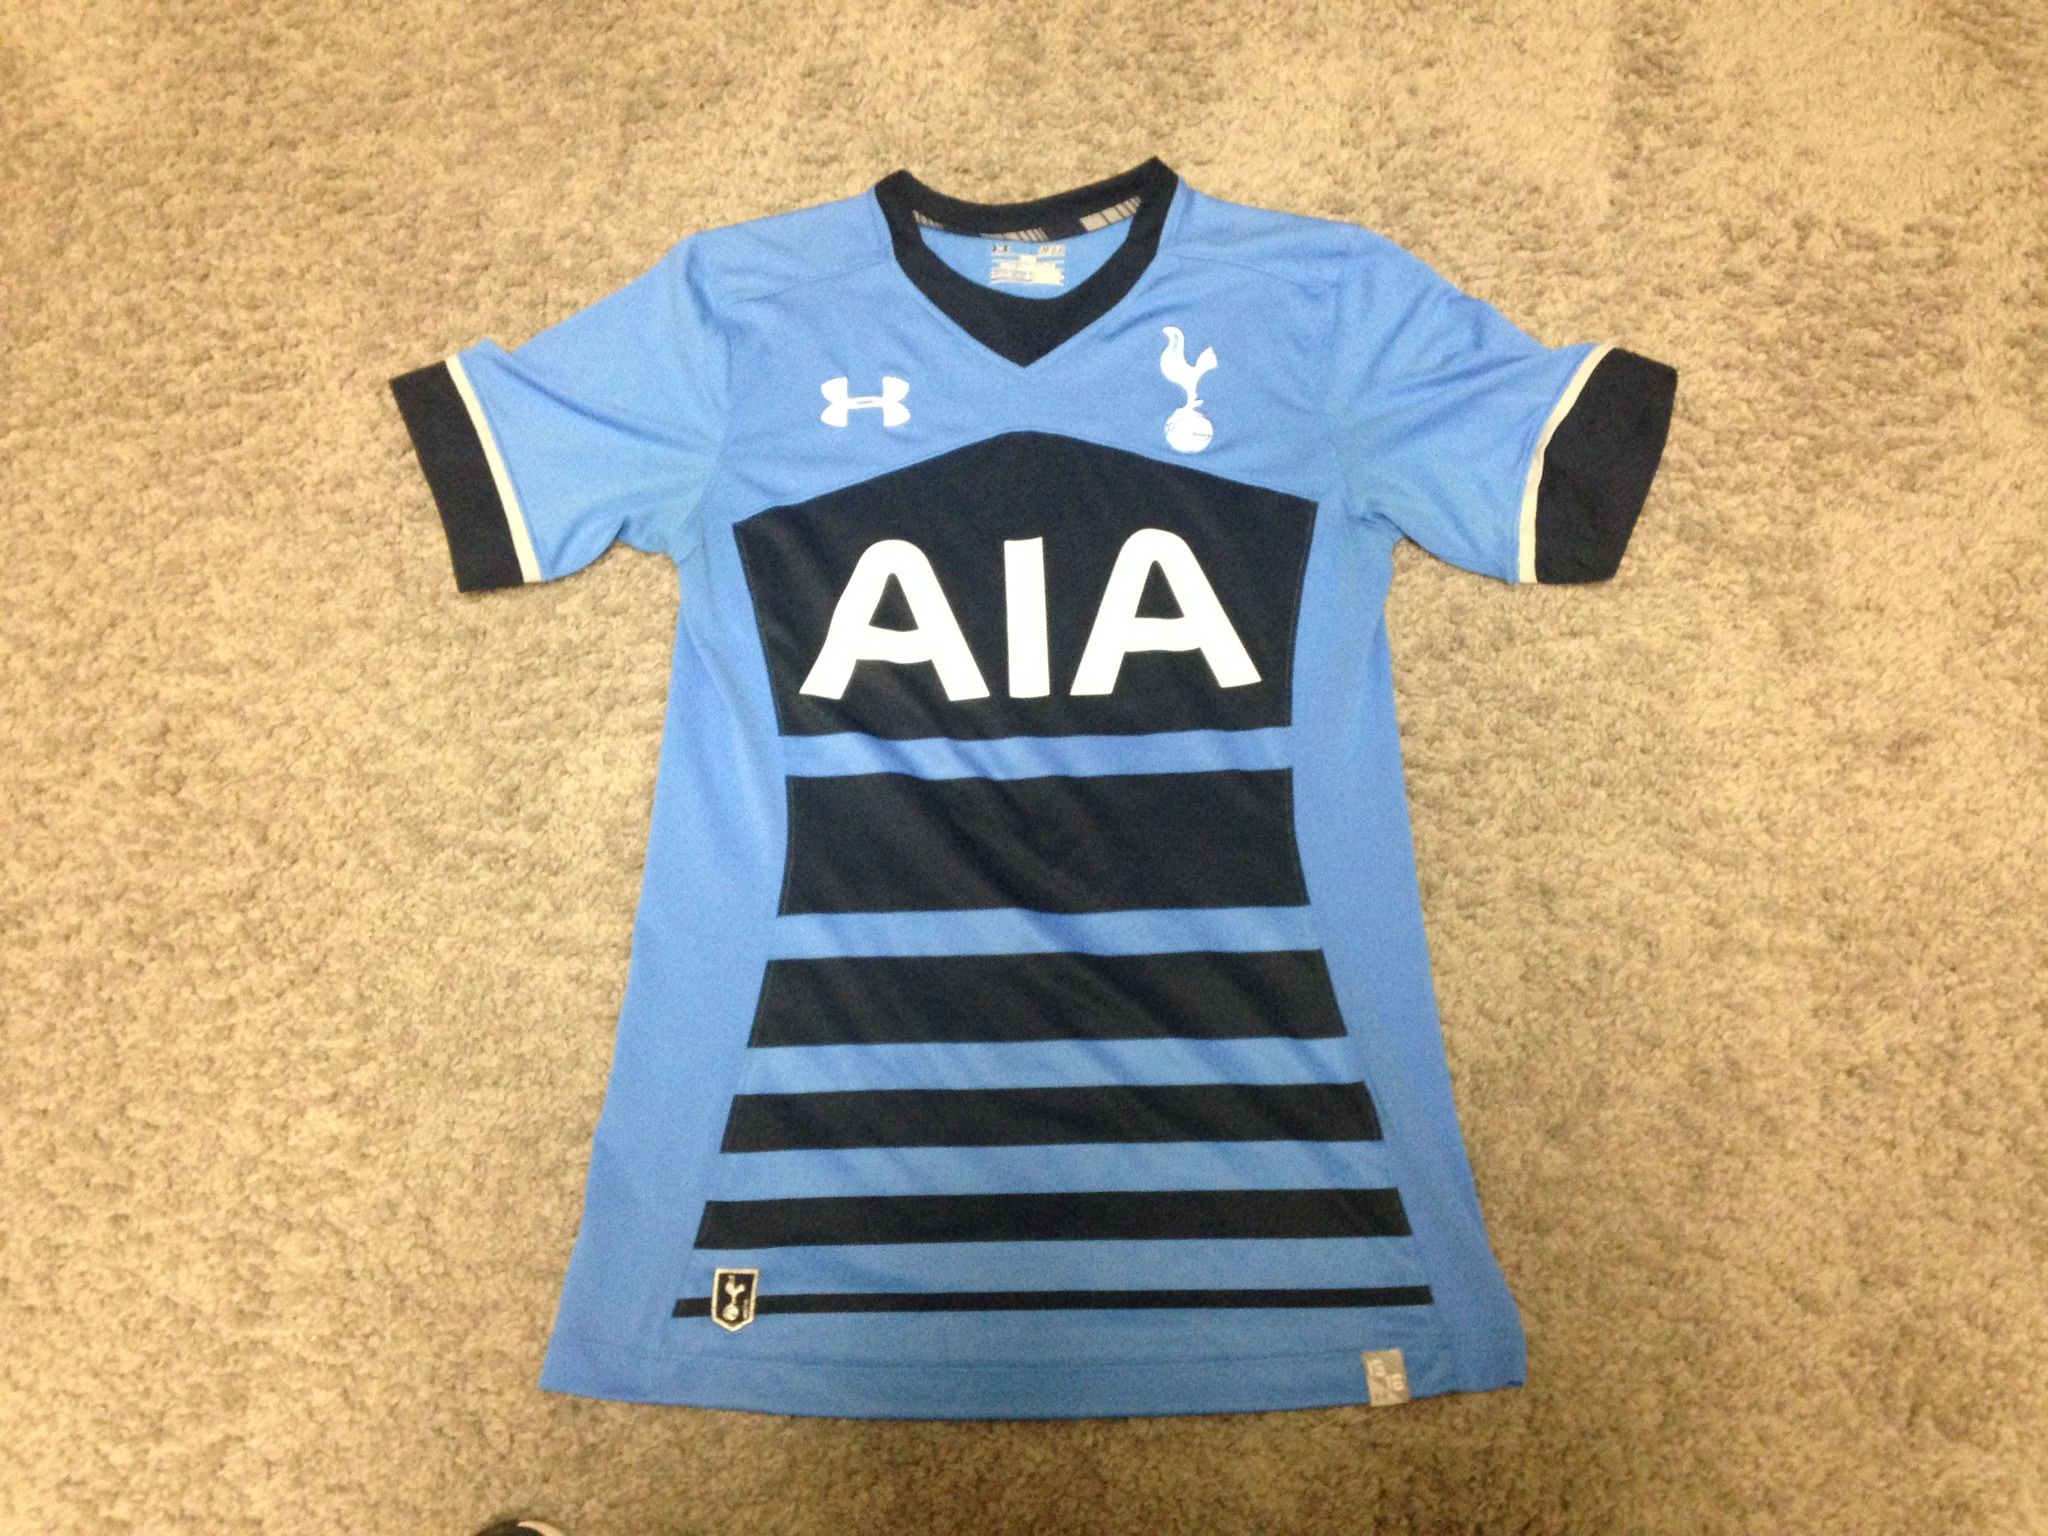 Tottenham Hotspurs jersey